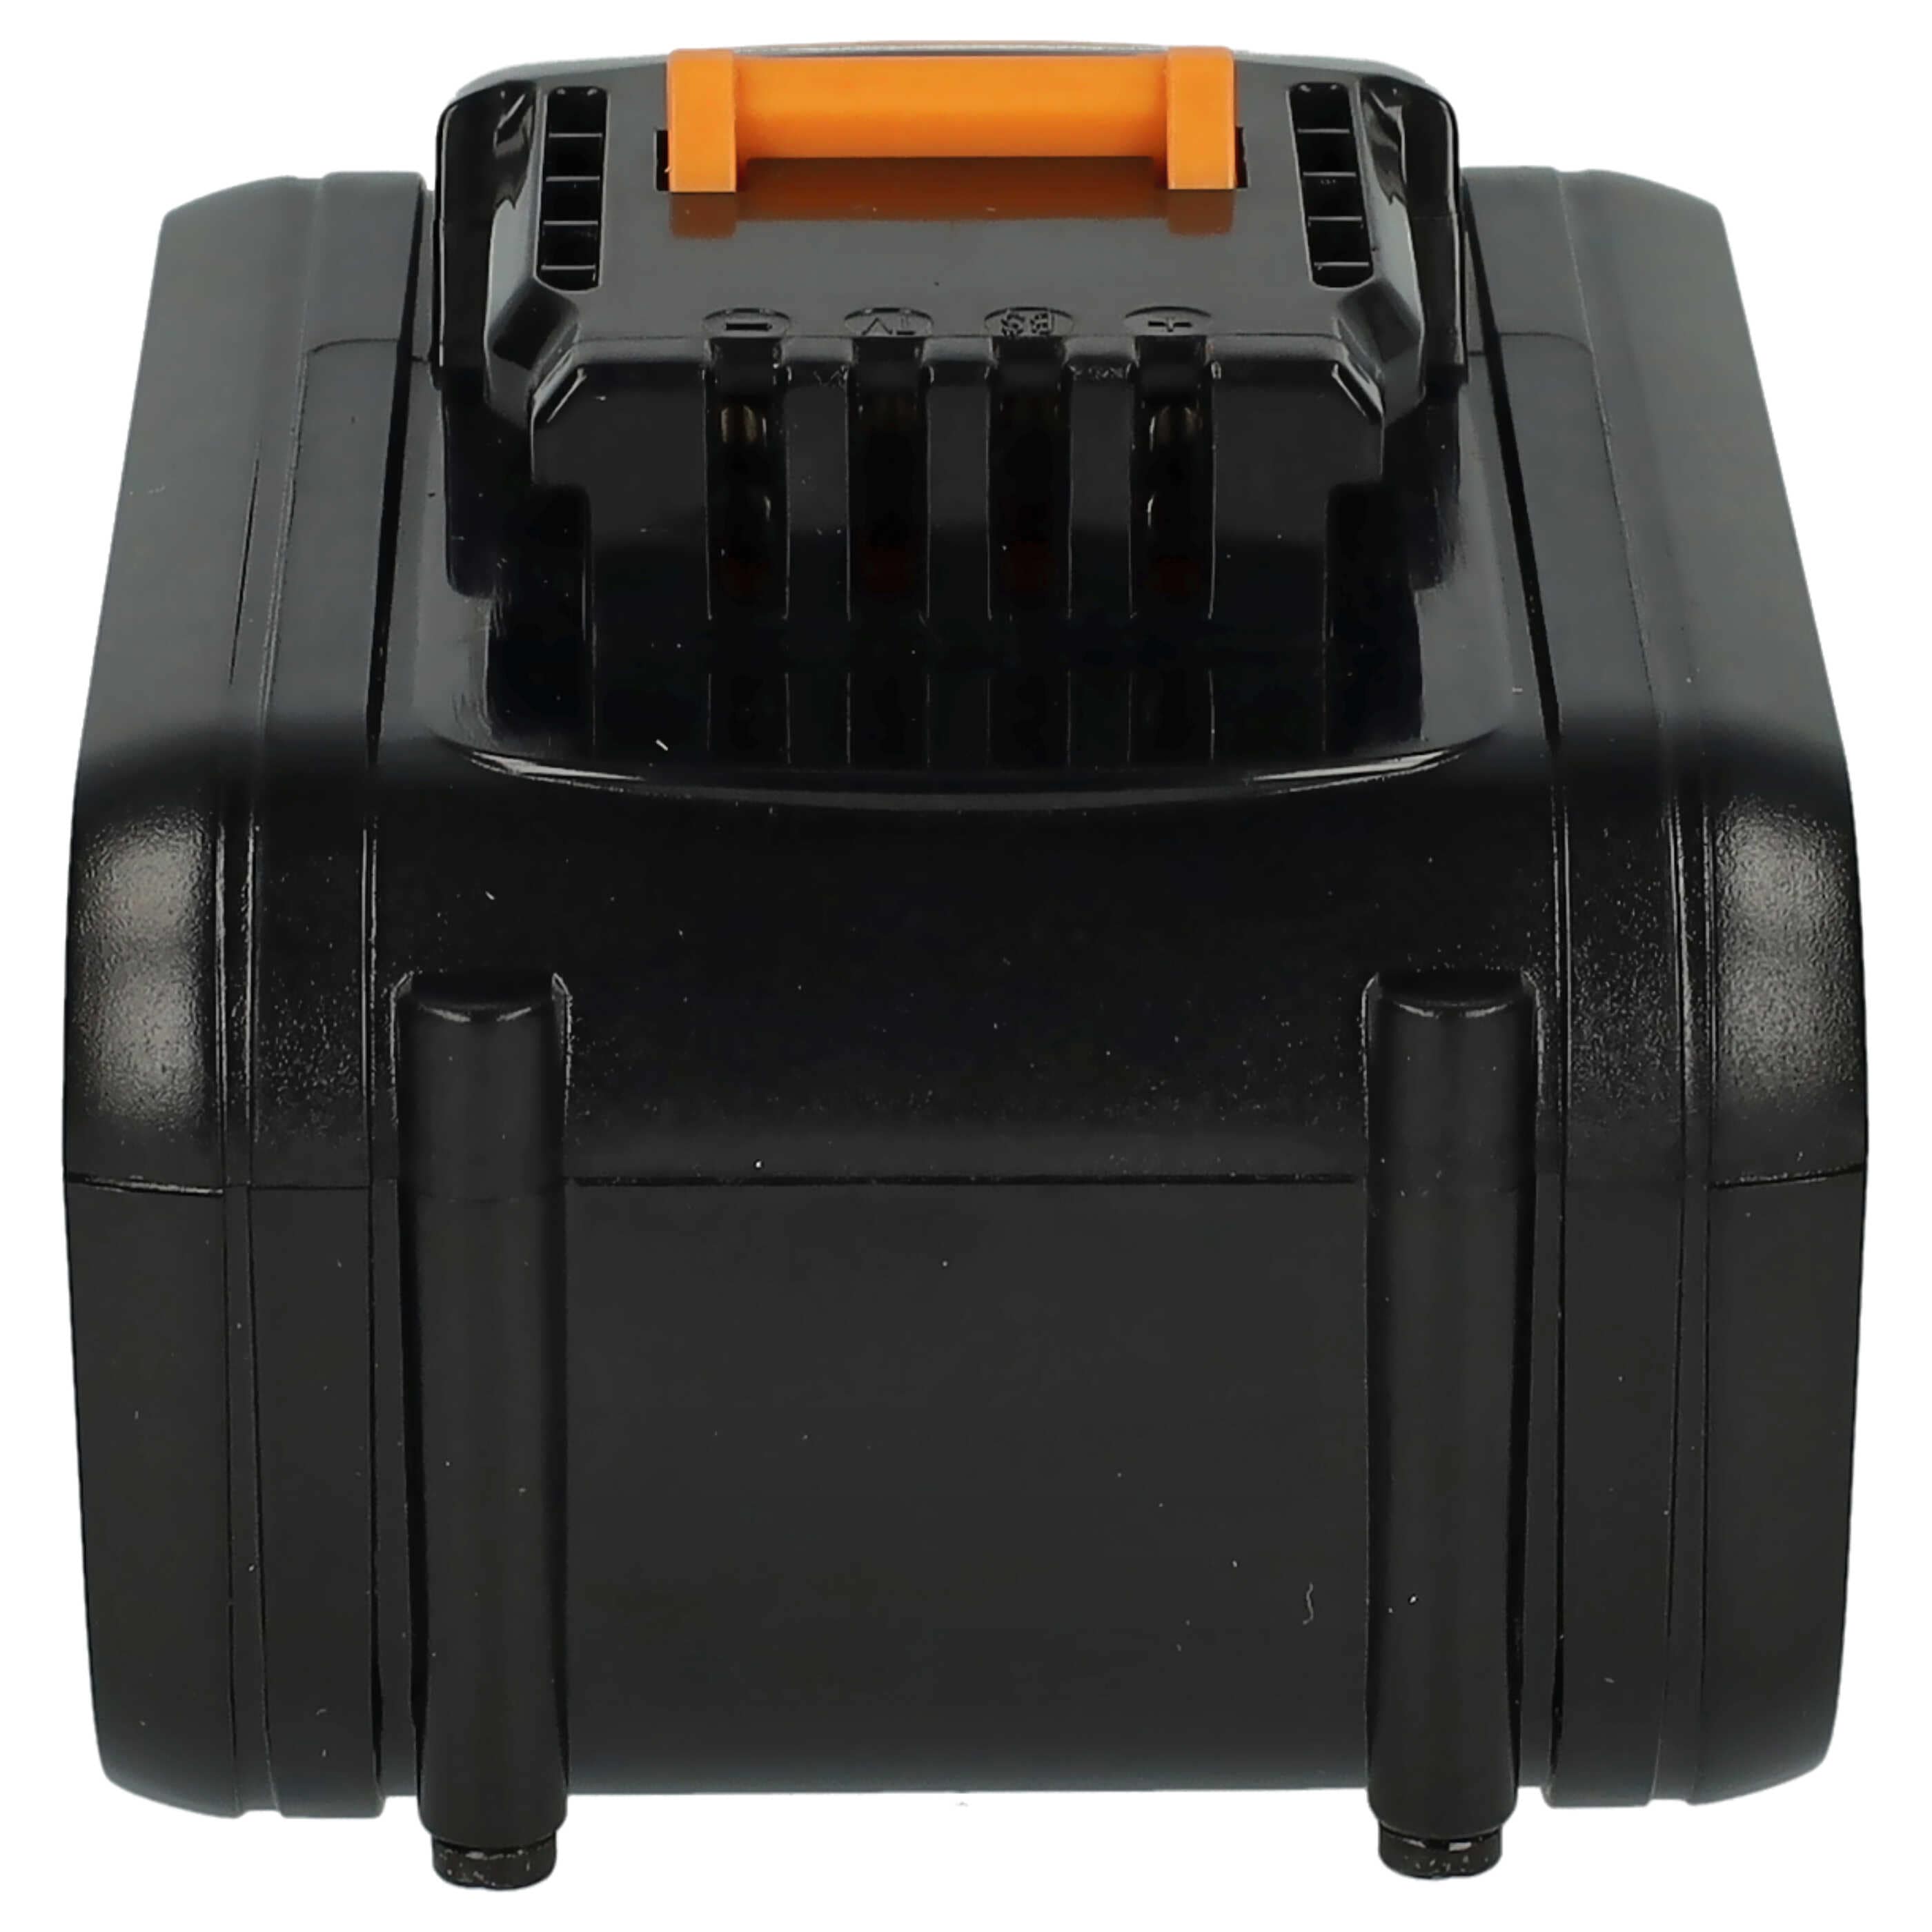 Batterie remplace Rockwell RW9351.1 pour outil électrique - 6000 mAh, 20 V, Li-ion